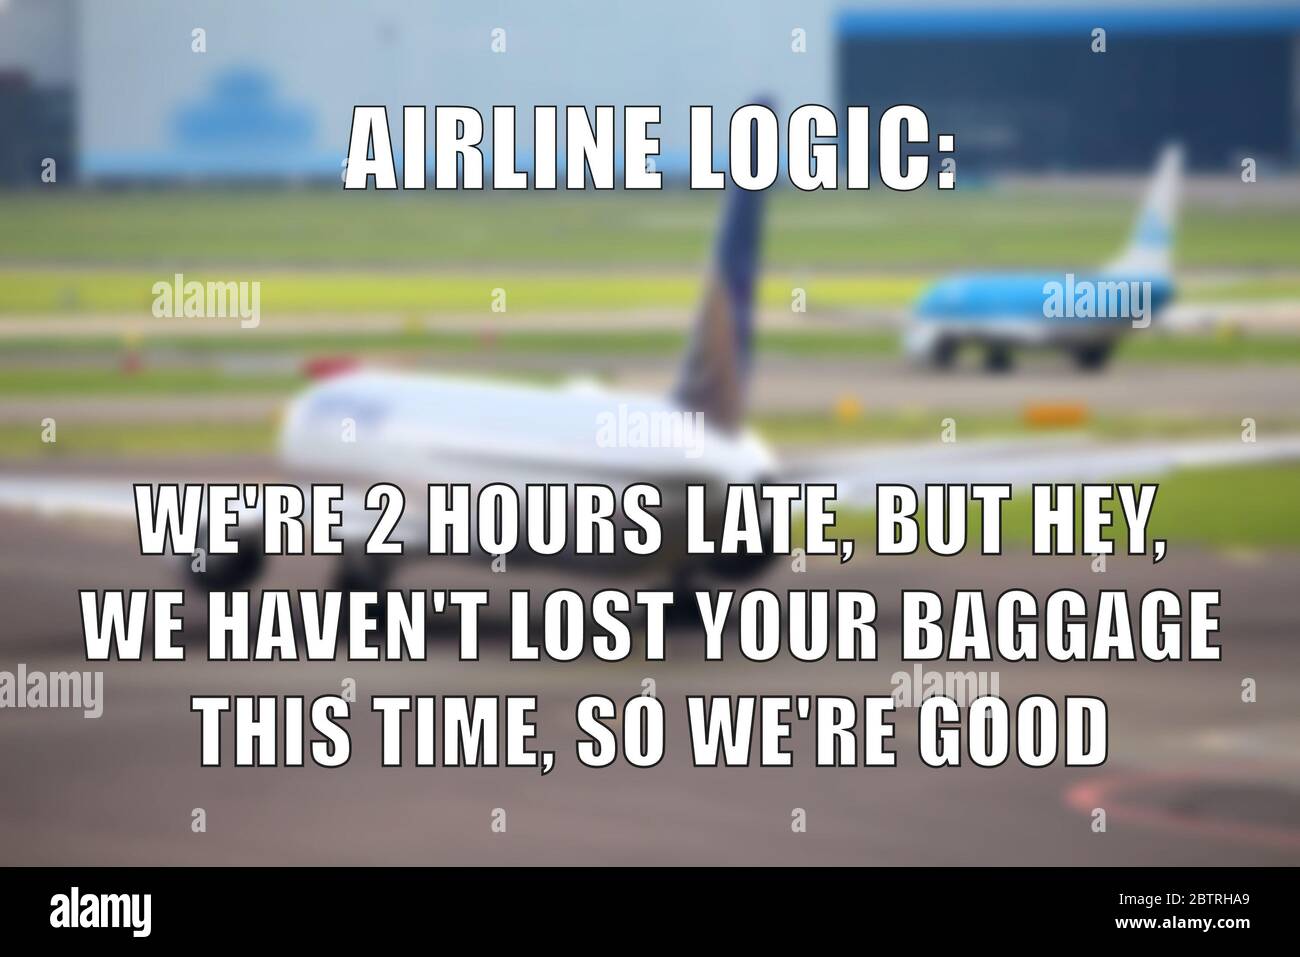 Promemoria divertente di logica della compagnia aerea per la condivisione dei social media. La compagnia aerea ha perso il bagaglio e ritarda lo scherzo. Foto Stock